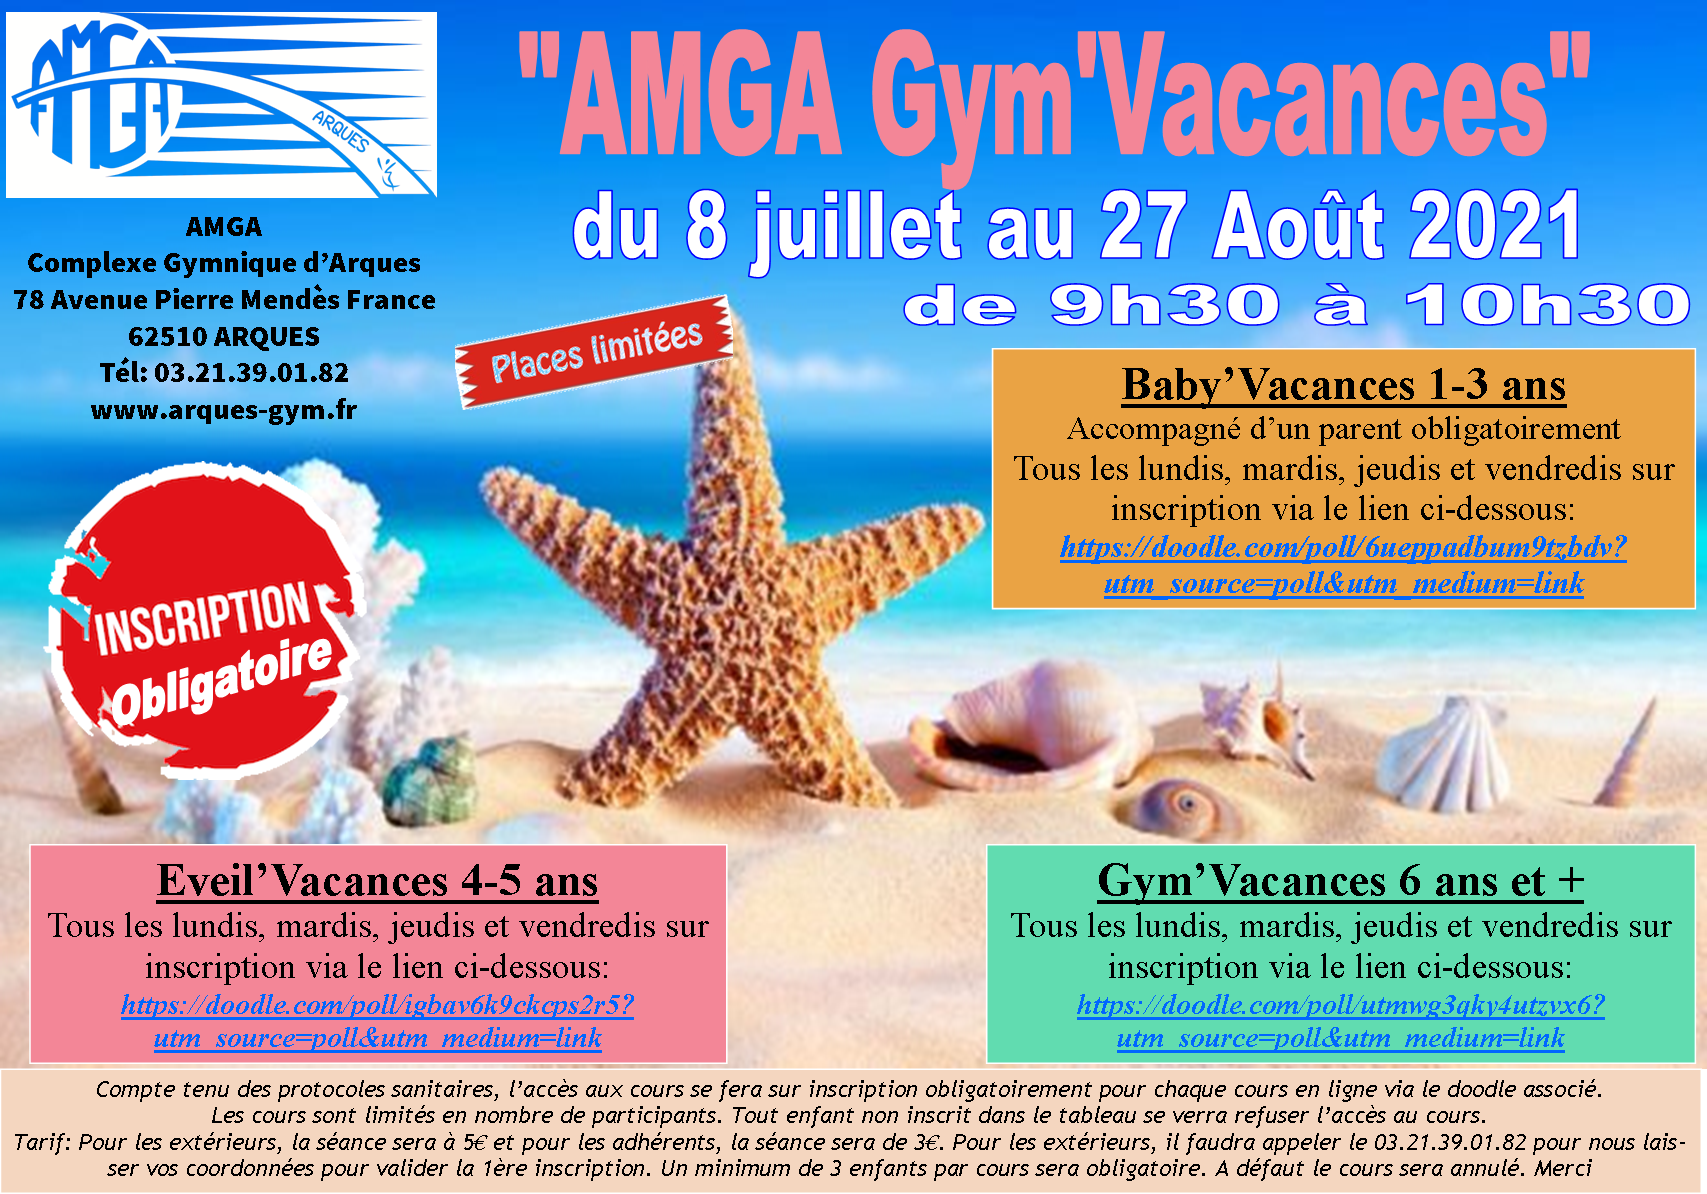 AMGA: le retour de la Gym'Vacances du 8 juillet au 27 août 2021.